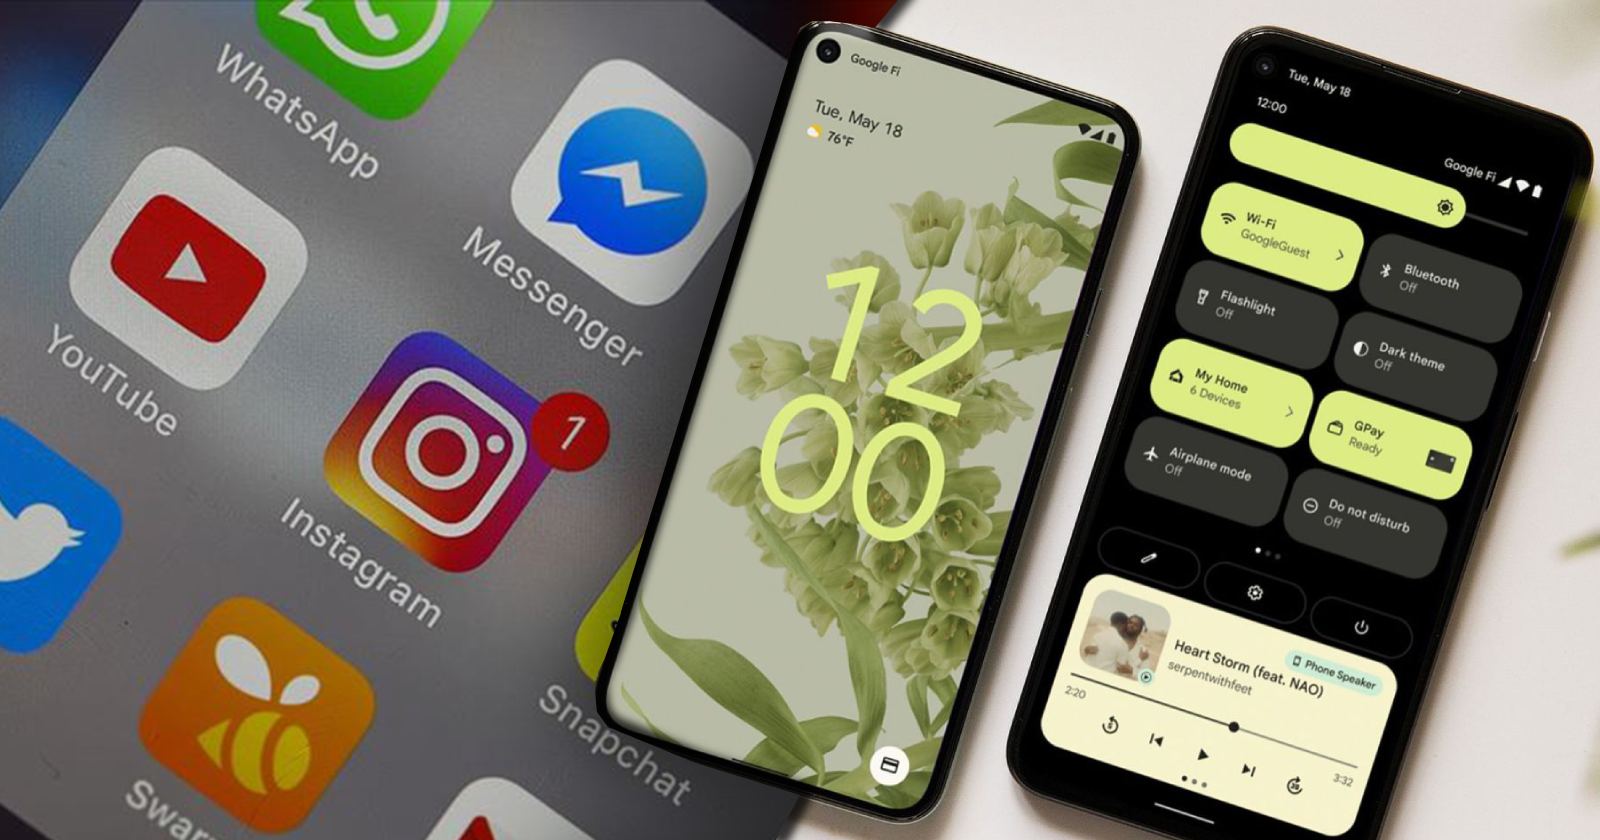 Instagram logosu, android temalı simge özelliği, facebook logosu